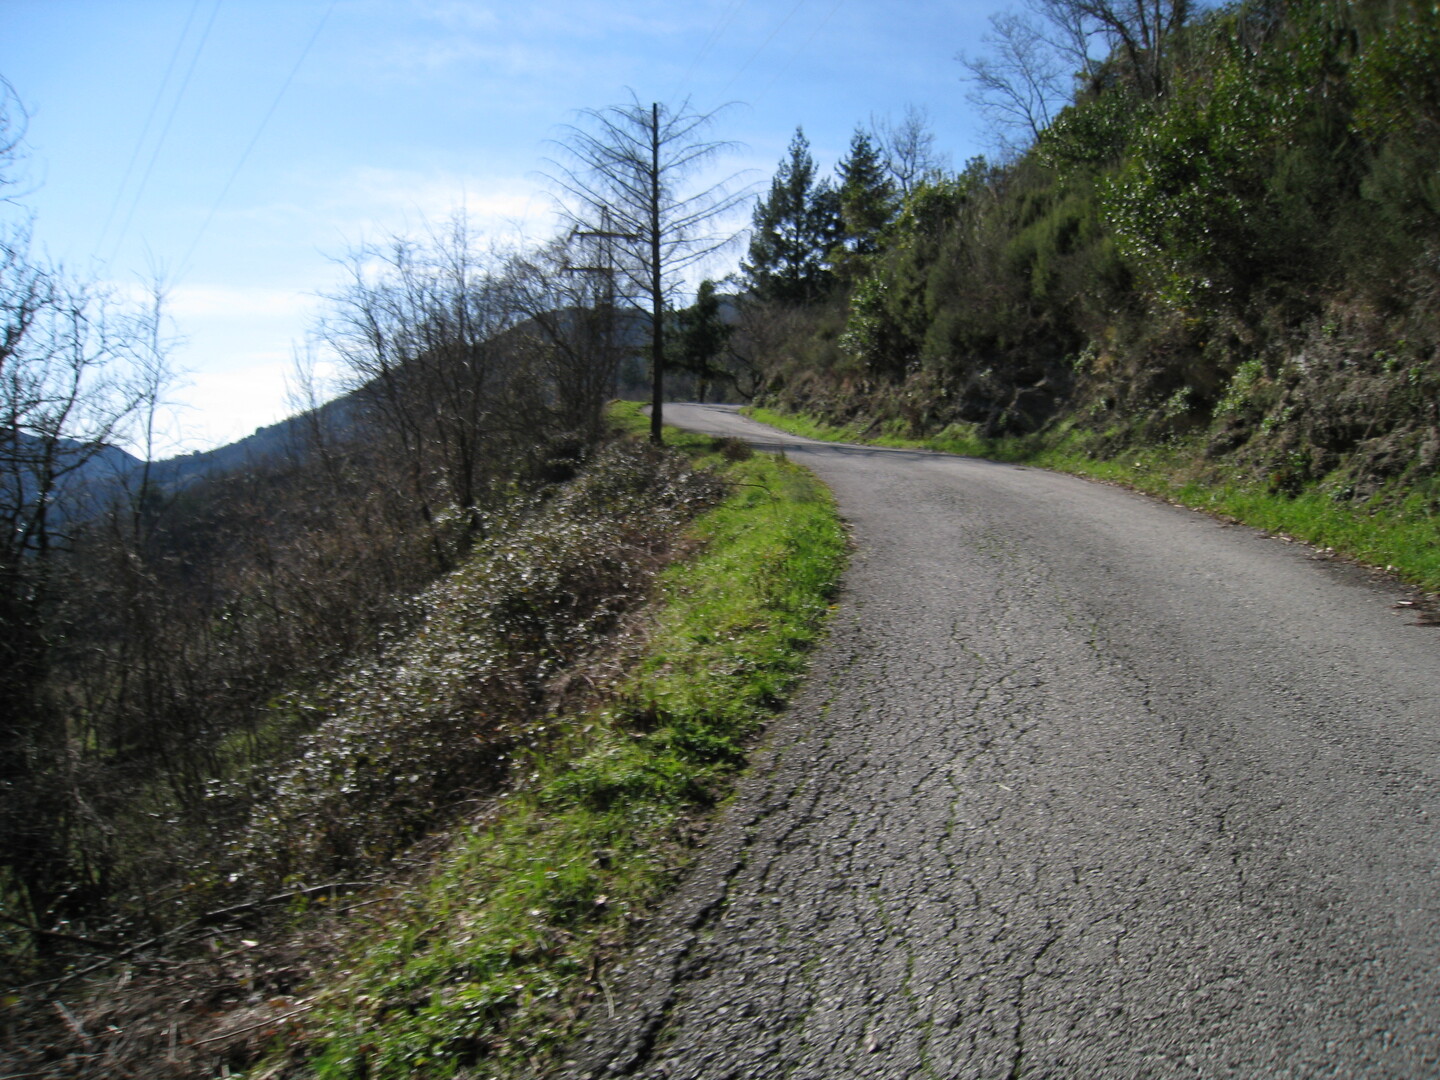 Über Belpiano gelangt man auf diese kleinen Strasse zum Pass.
(Februar 2009)